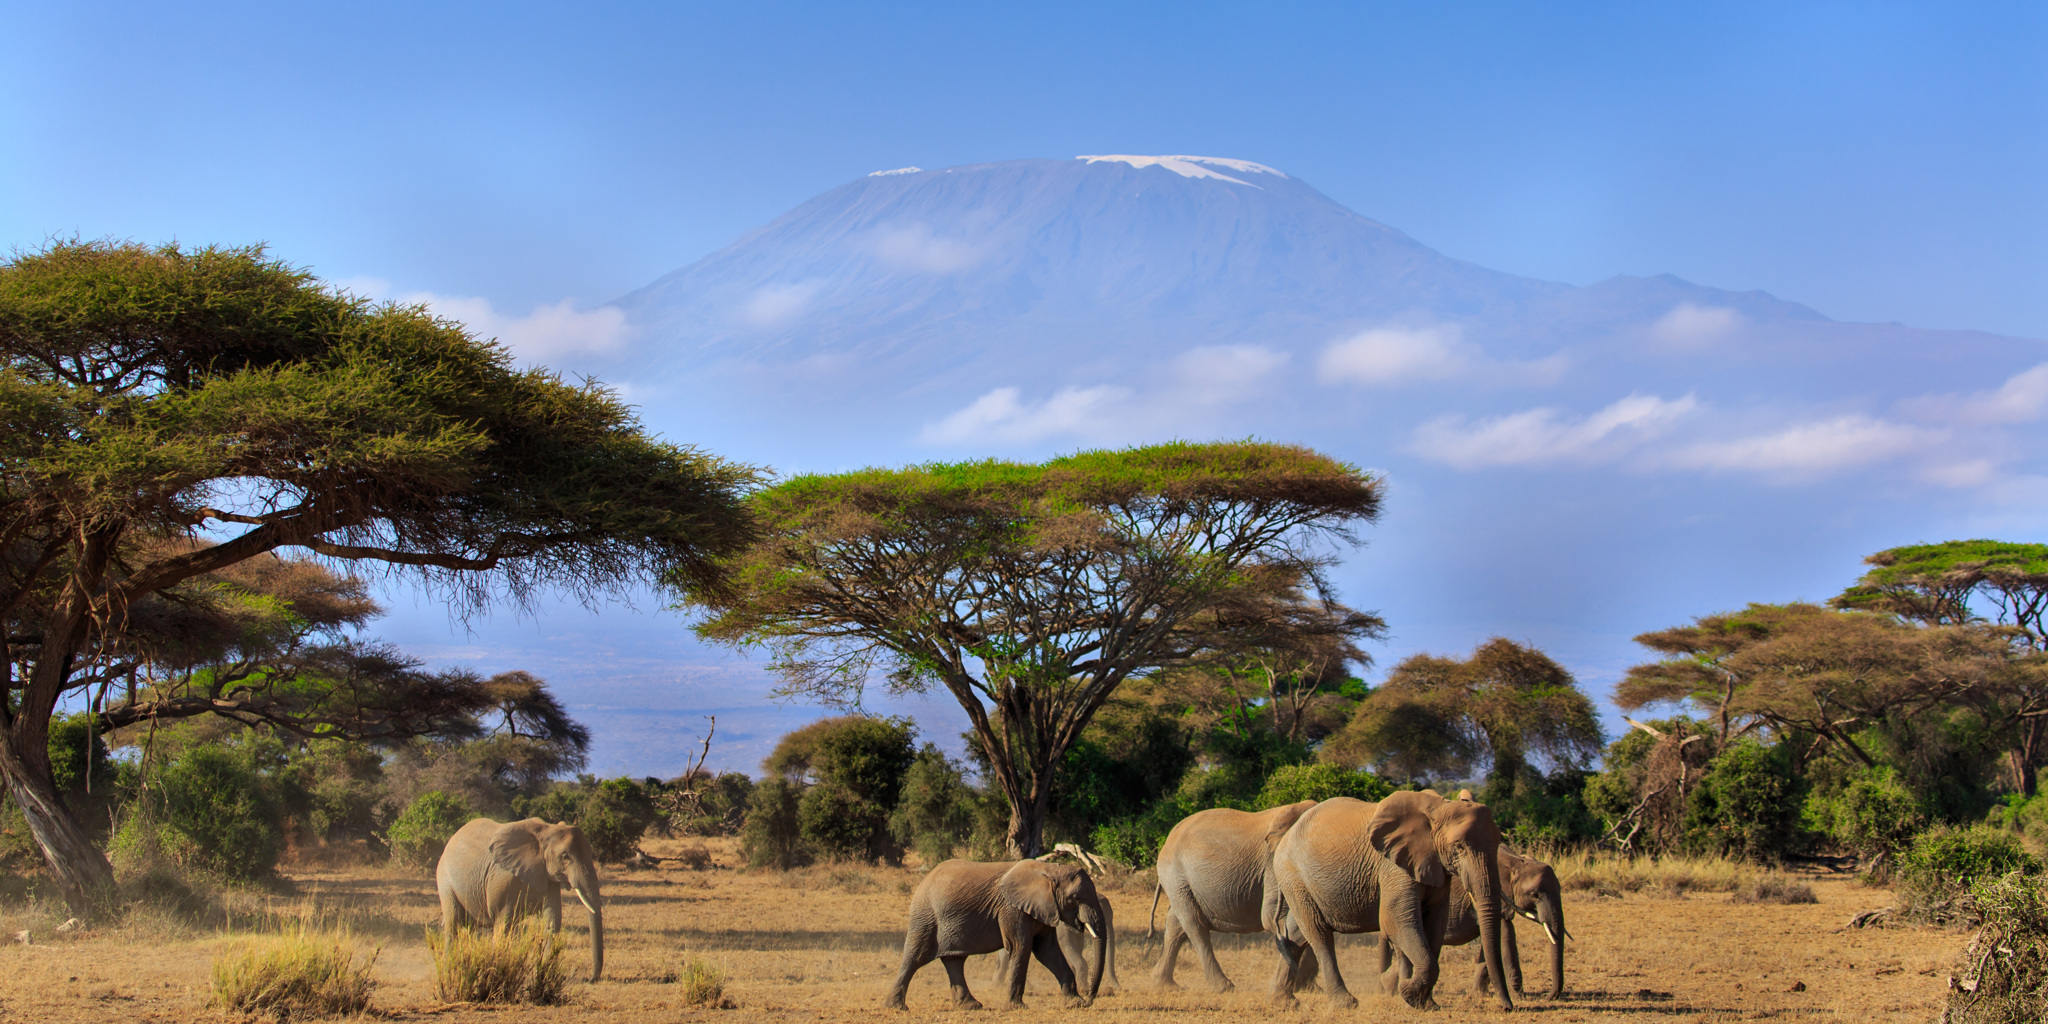 Elephants in front of Mount Kilimanjaro, Amboseli